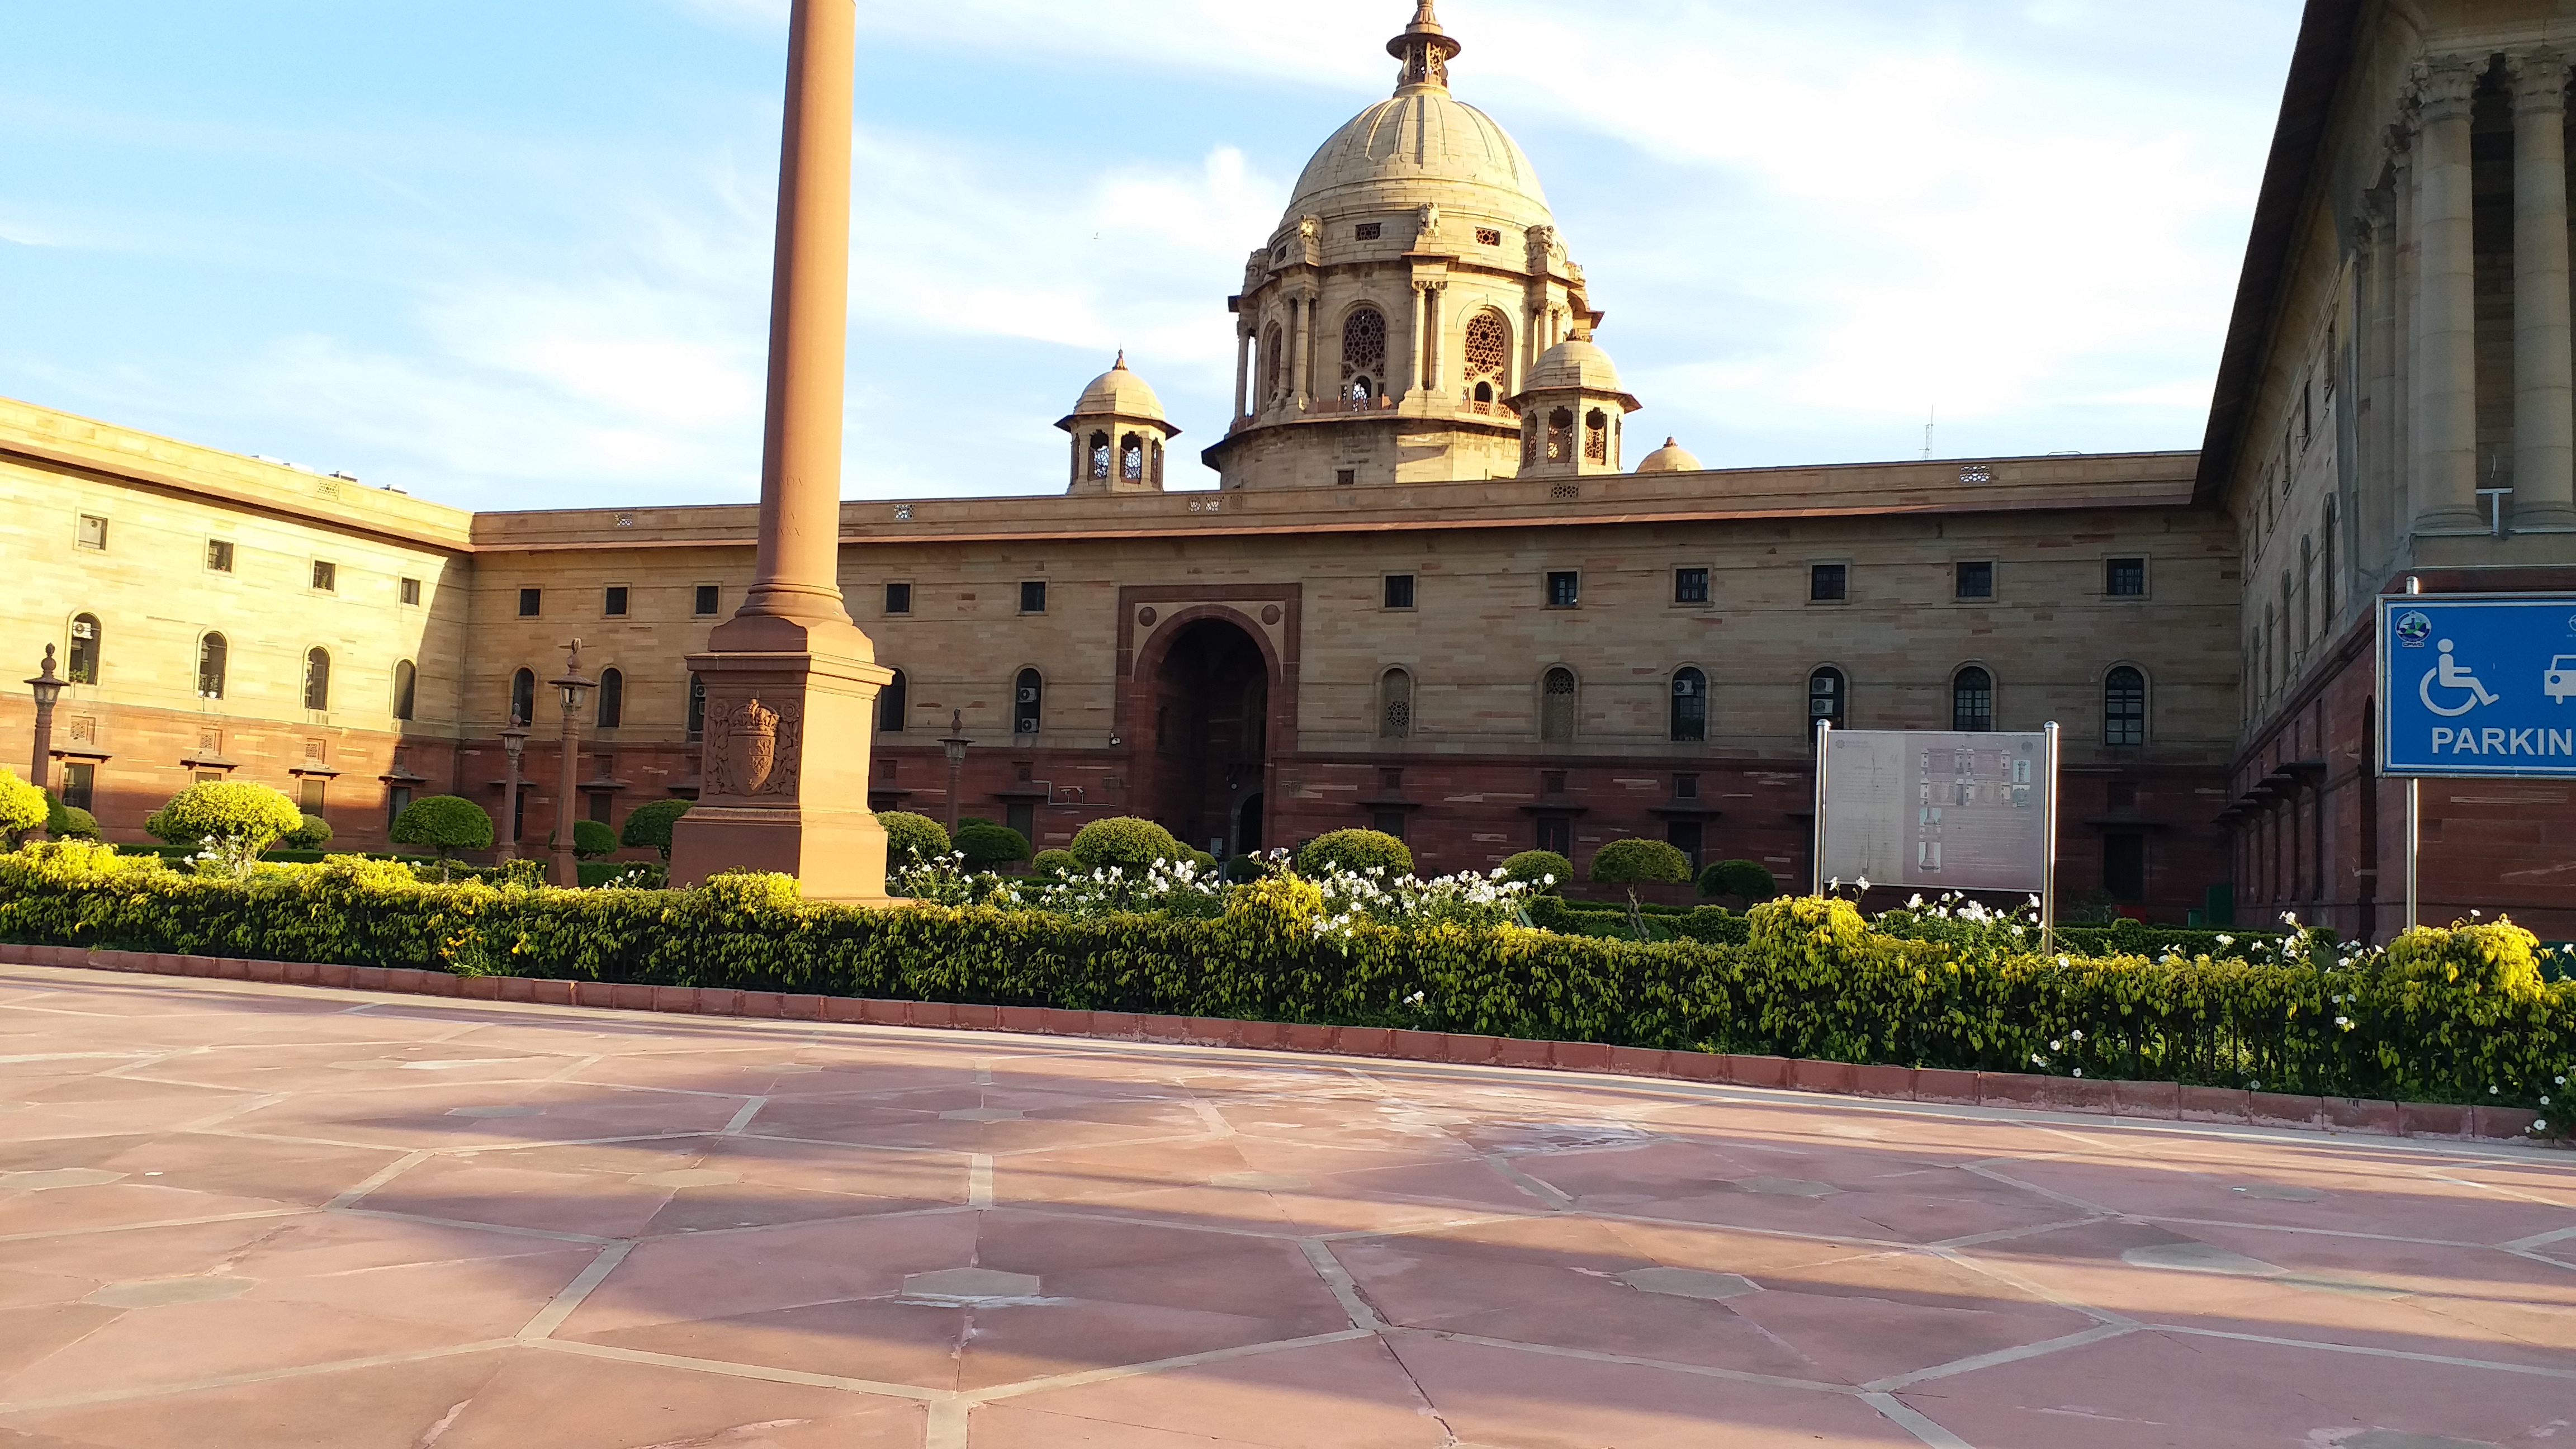 انڈیا گیٹ سے صدارتی محل صاف ستھرا دکھتا ہے